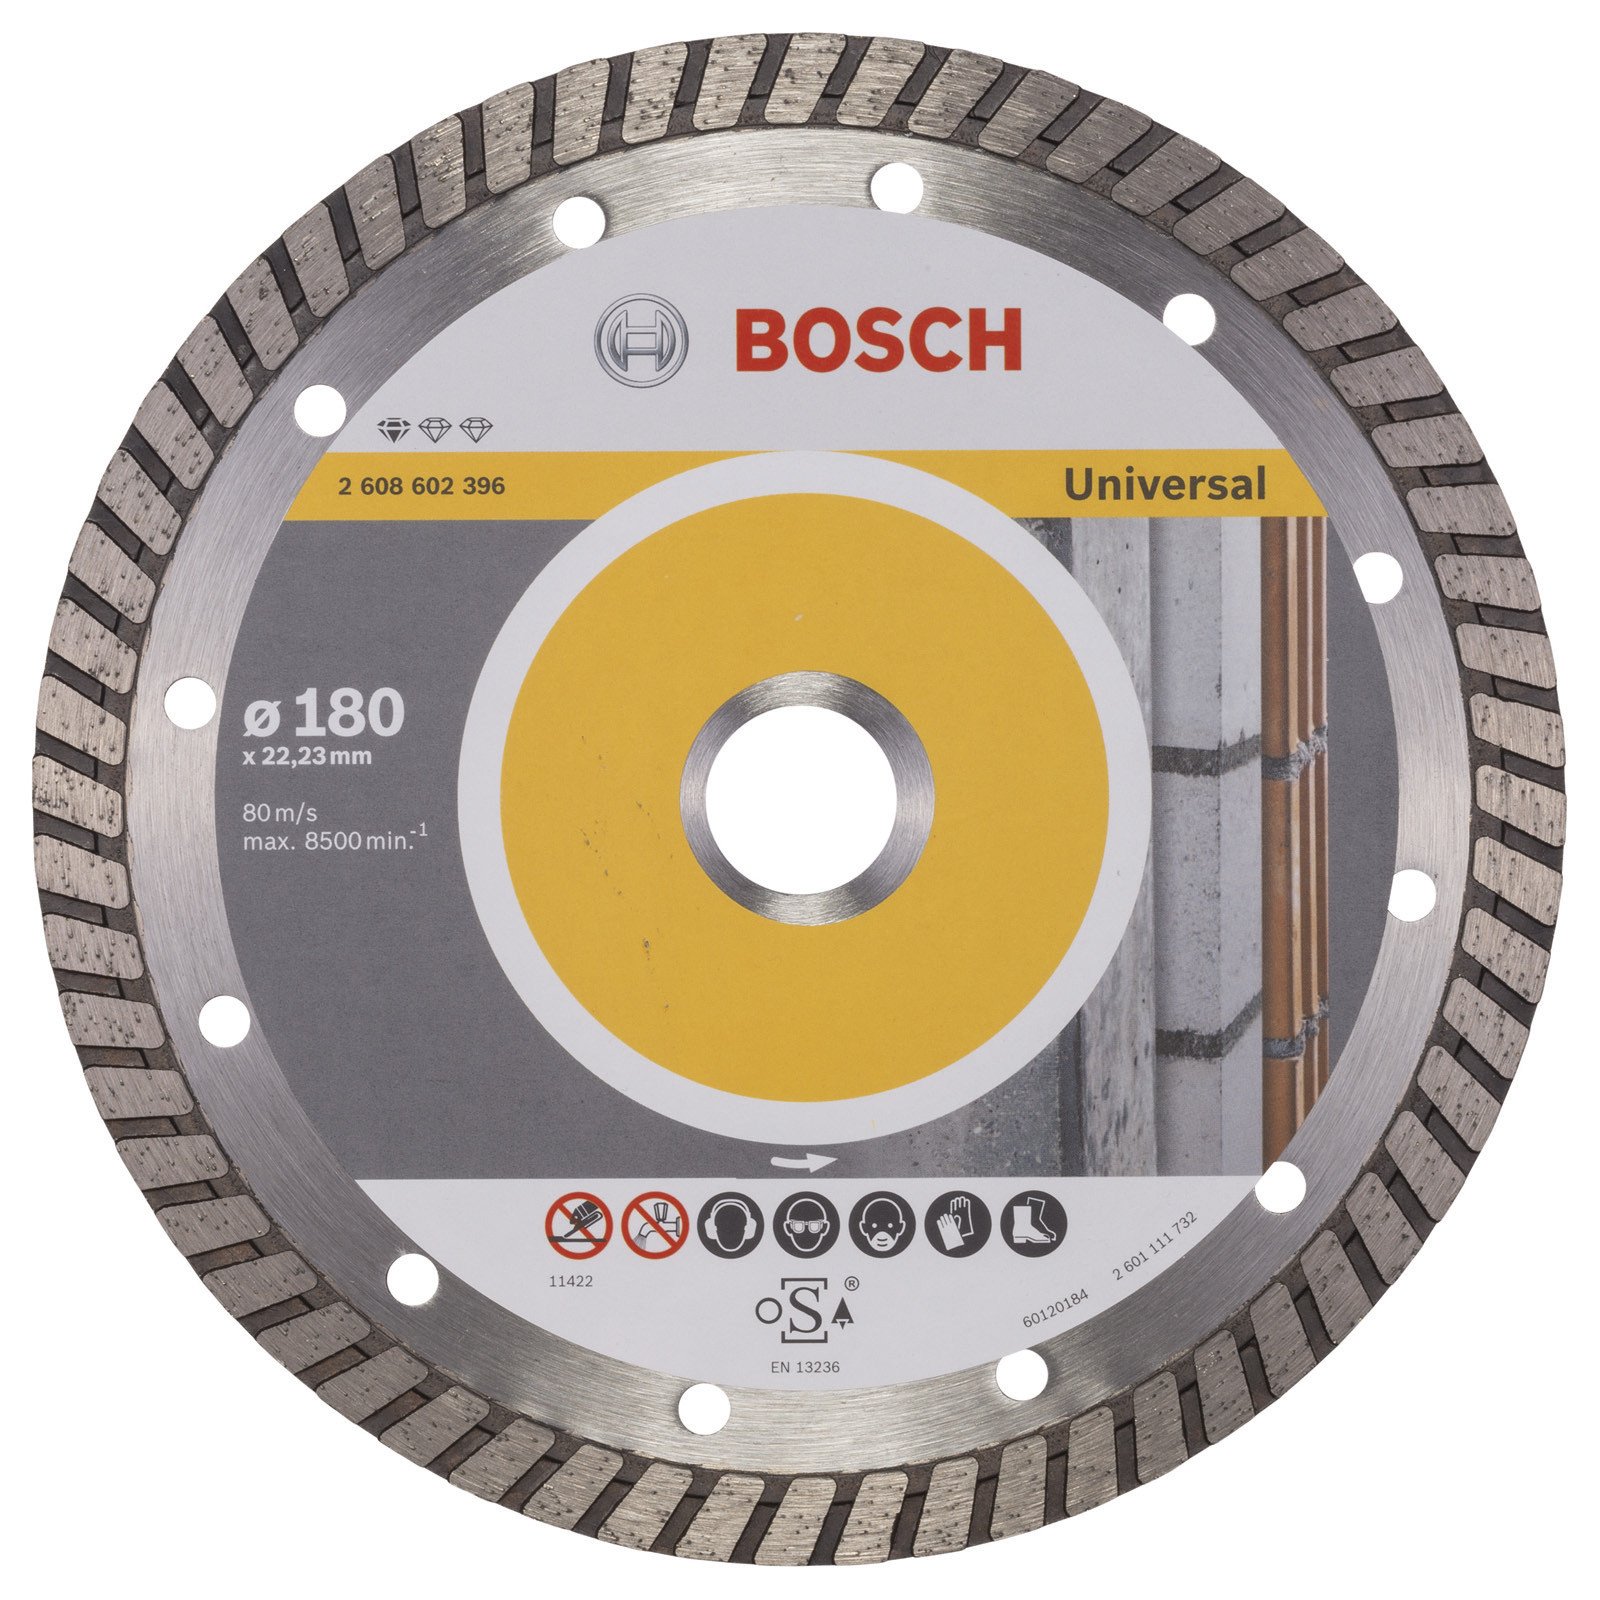 Bosch Diamanttrennscheibe Standard for Universal Turbo Ø 180 mm 2608602396 Stein 